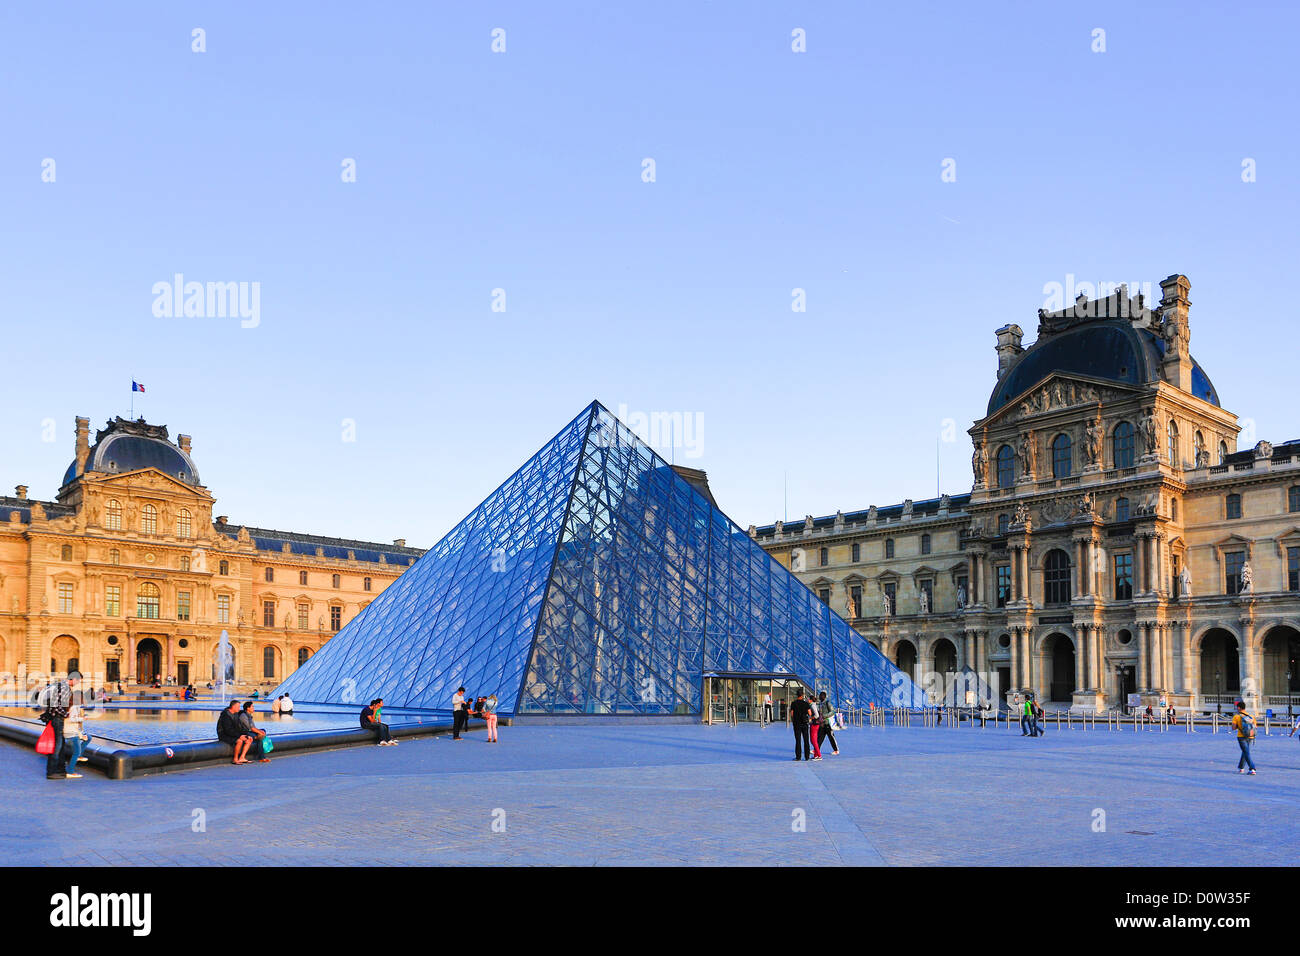 France, Europe, voyage, Paris, Ville, Louvre, Musée, pyramide, arch, architecture, art, artistique, monument, monumental, Skyline Banque D'Images